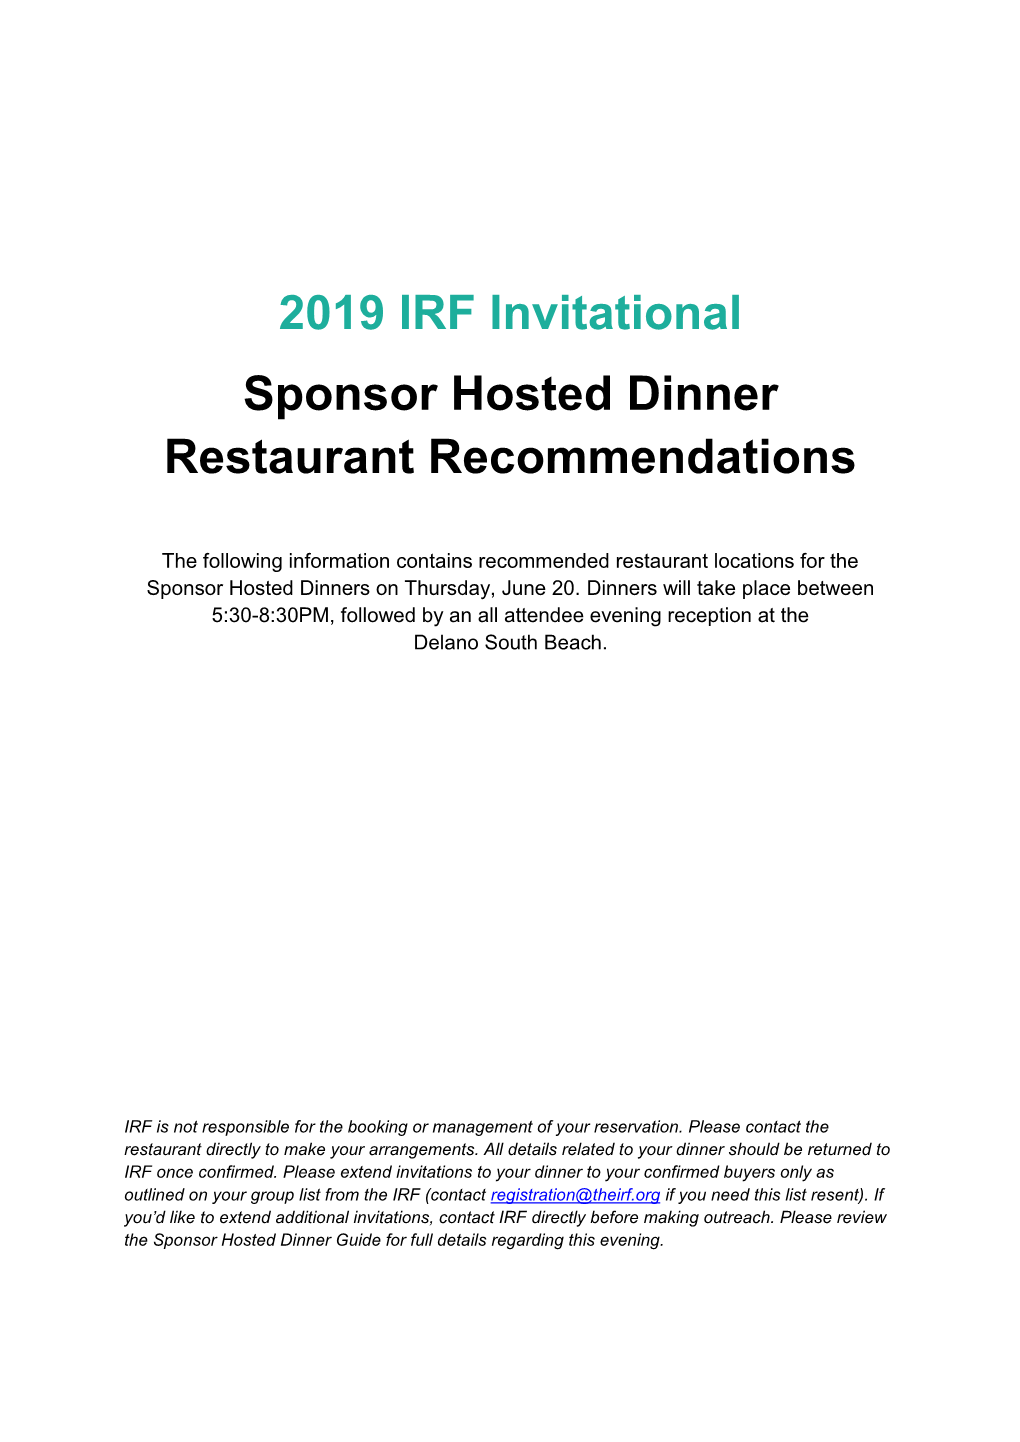 2019 IRF Invitational Sponsor Hosted Dinner Restaurant Recommendations